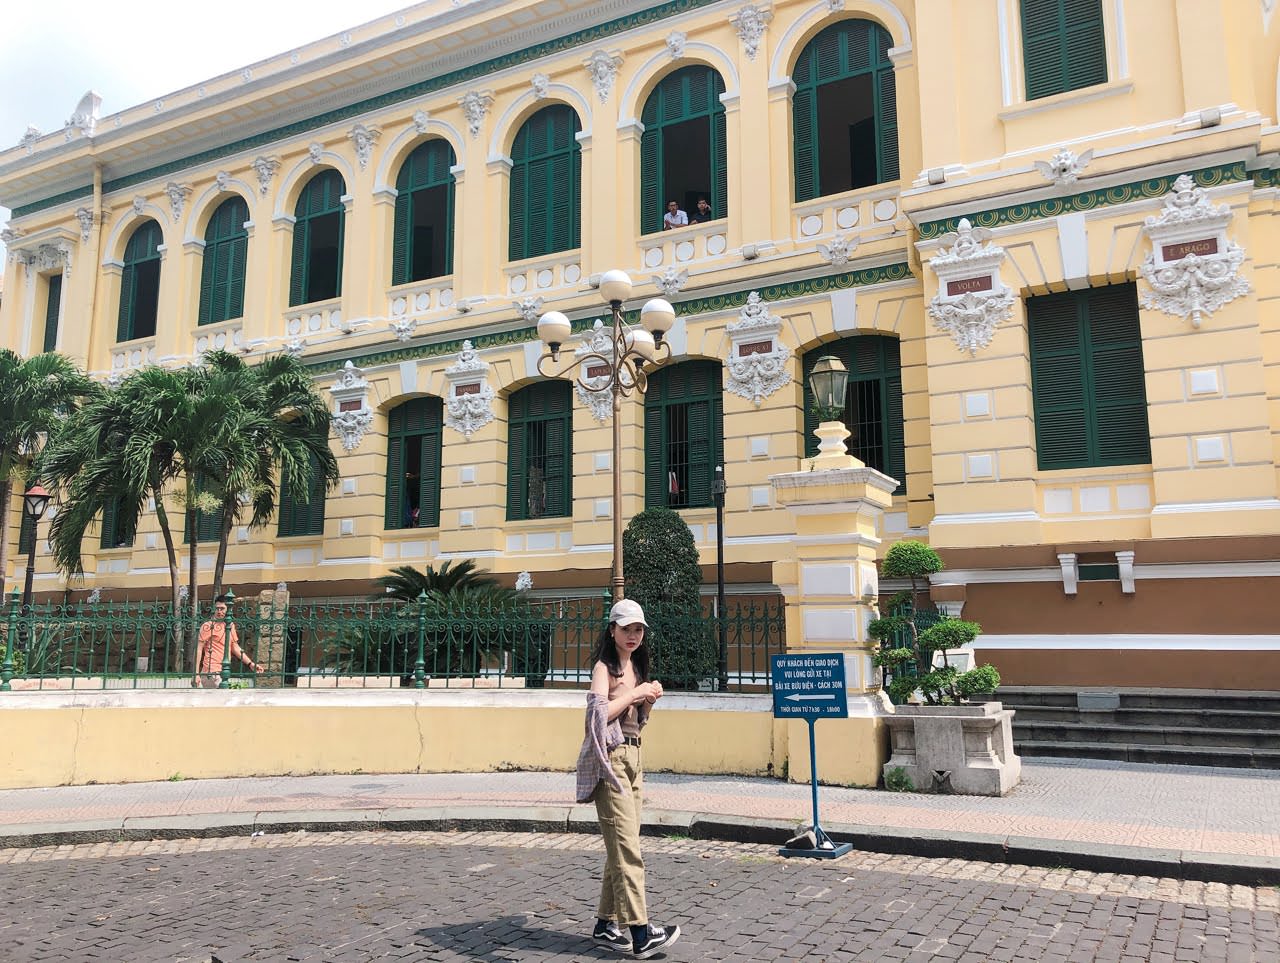 Vietnam 胡志明市自由行 
Bưu điện trung tâm Sài Gòn 中央郵局